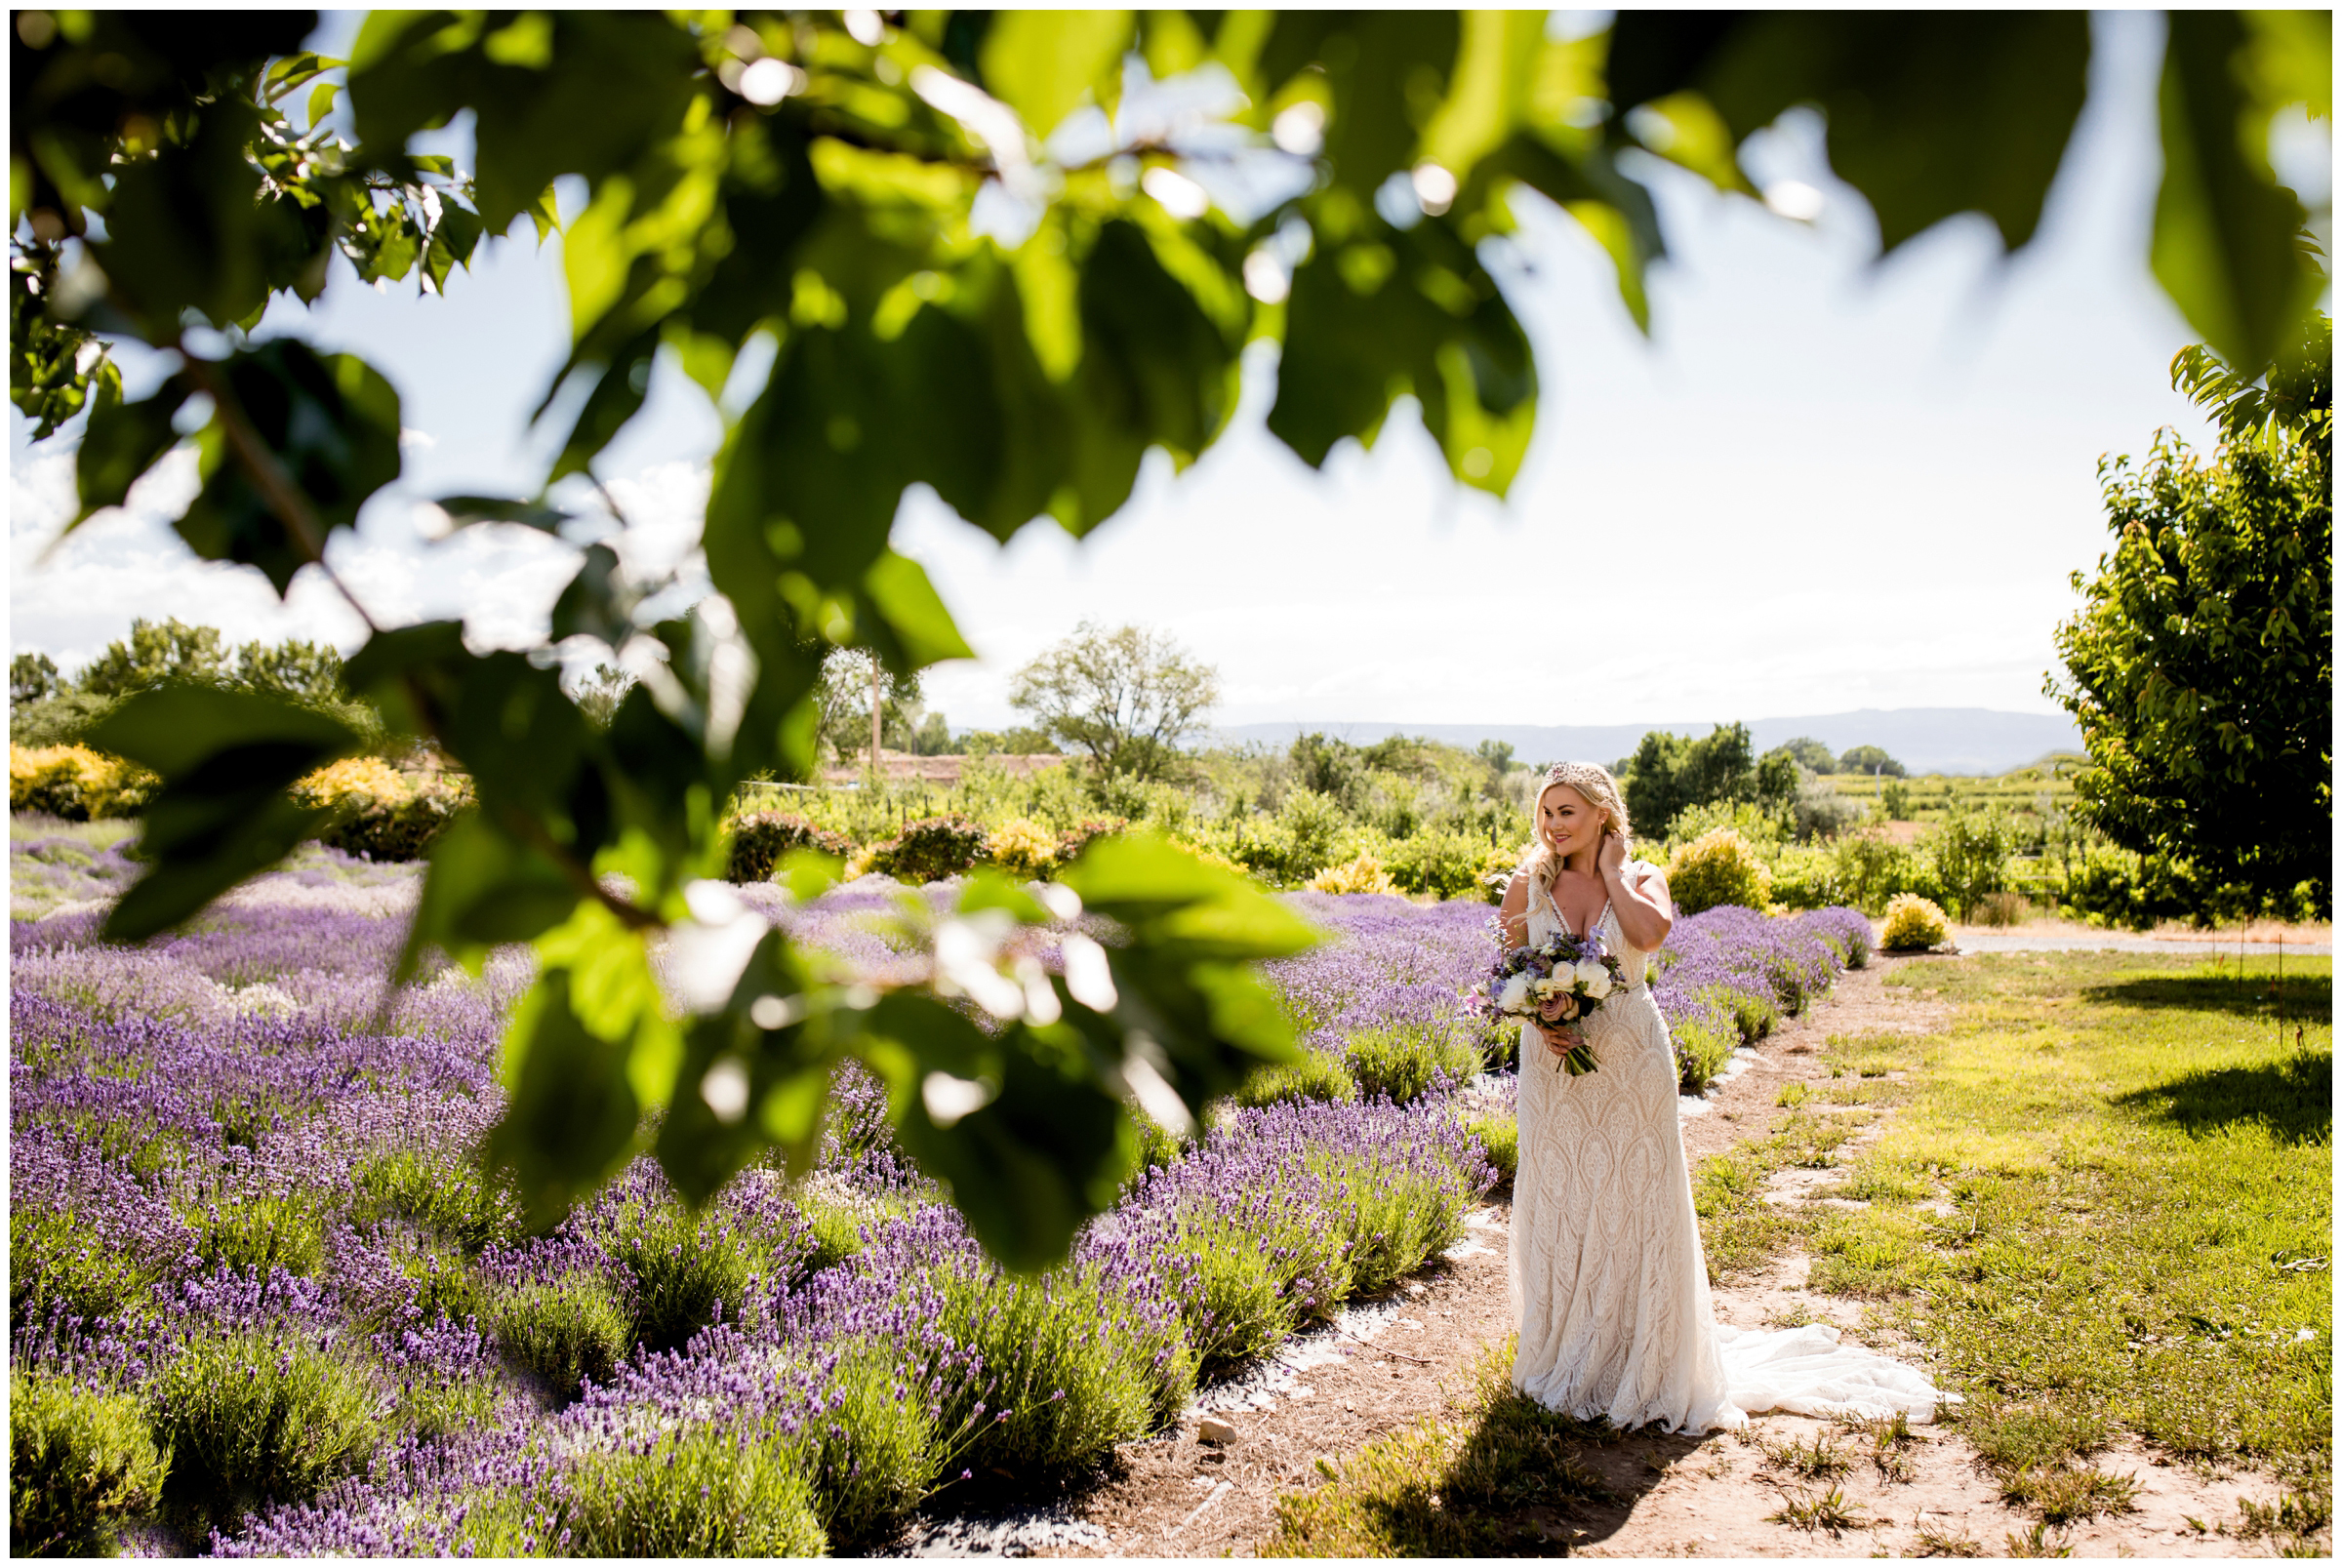 Palisade Colorado wedding photos in a lavender field